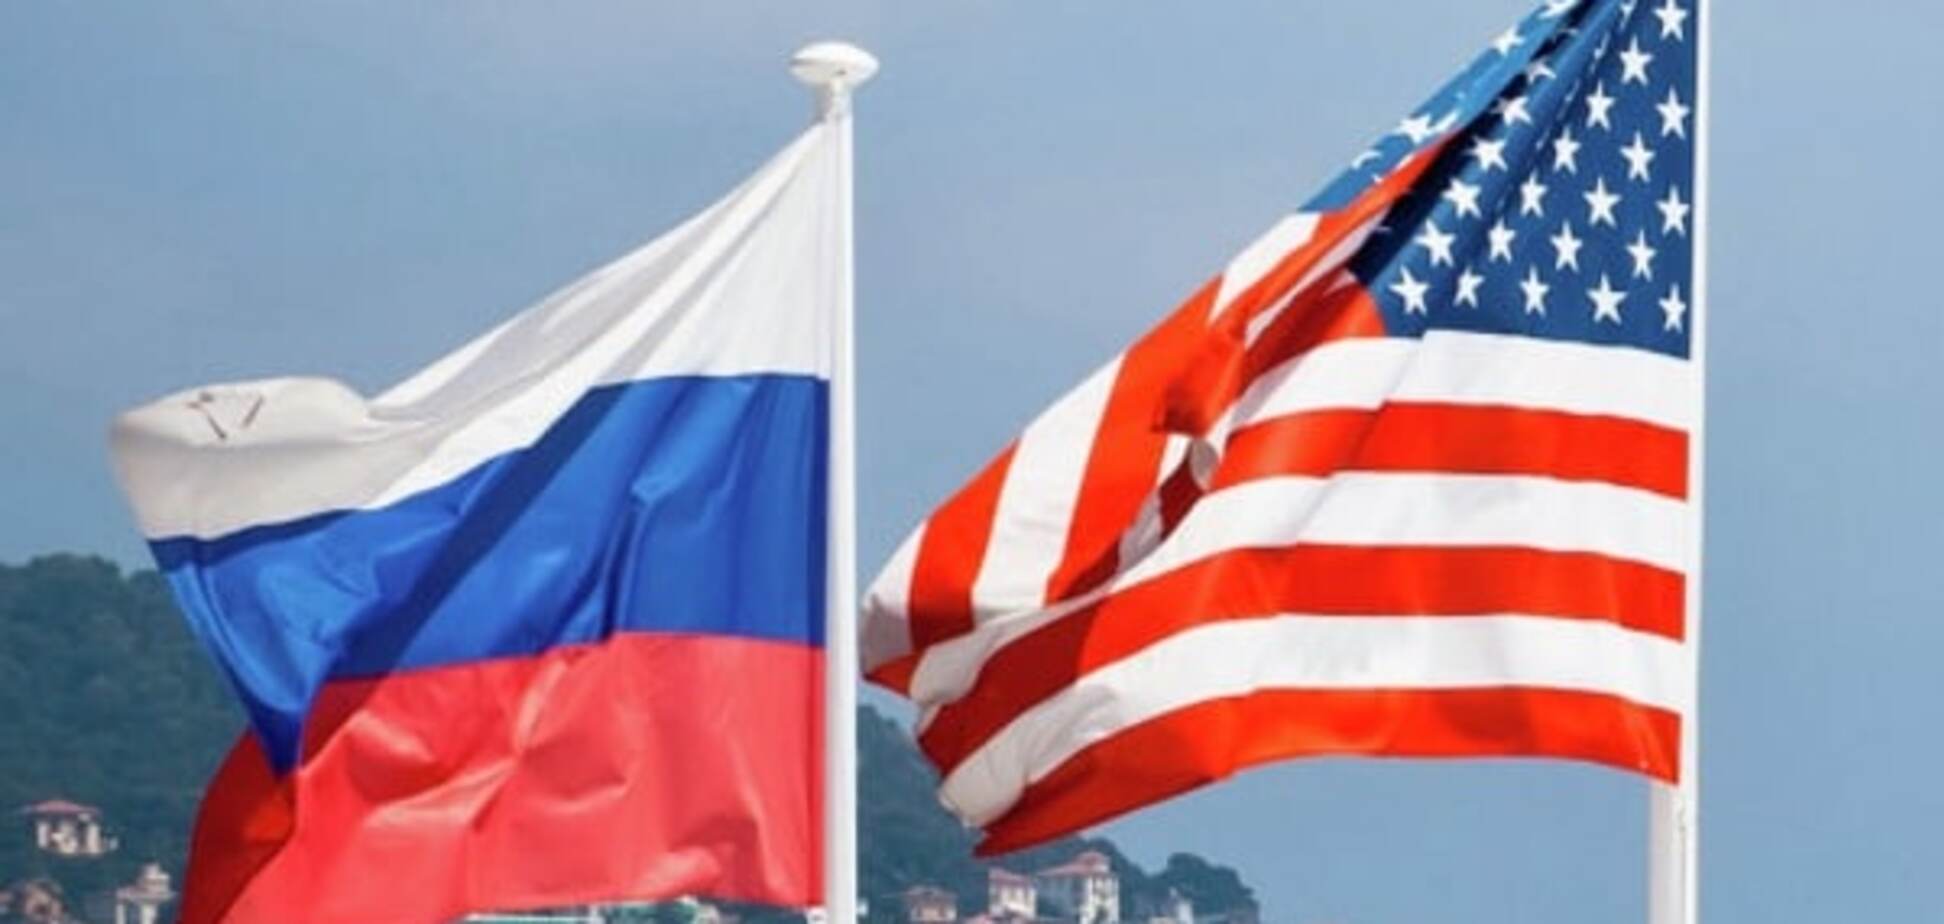 Прапори Росії та США